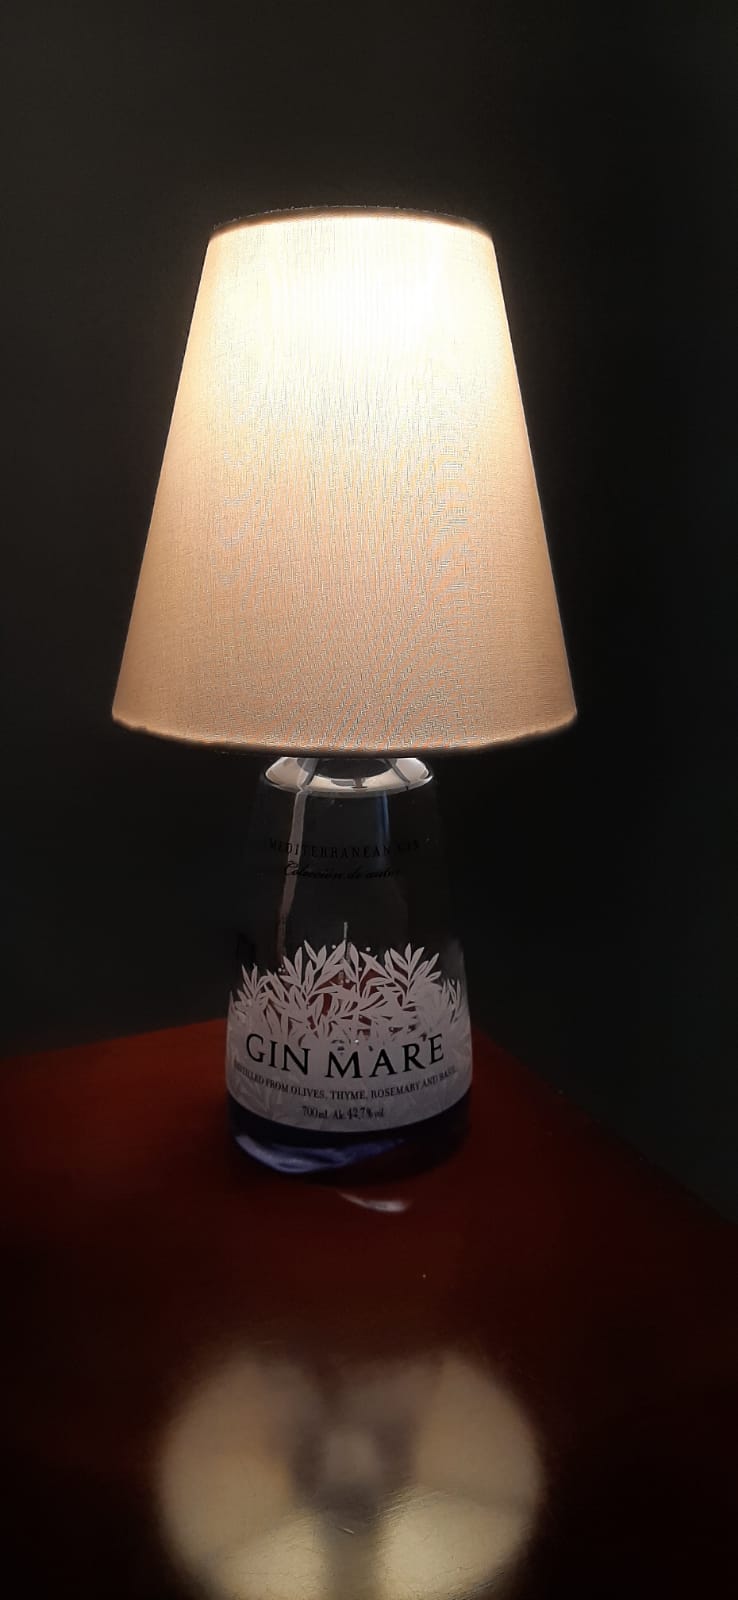 Bottle Table Lamp - I migliori prodotti Made in Italy da Fiera di Monza Shop - Solo 30€! Acquista subito su Fiera di Monza Shop!